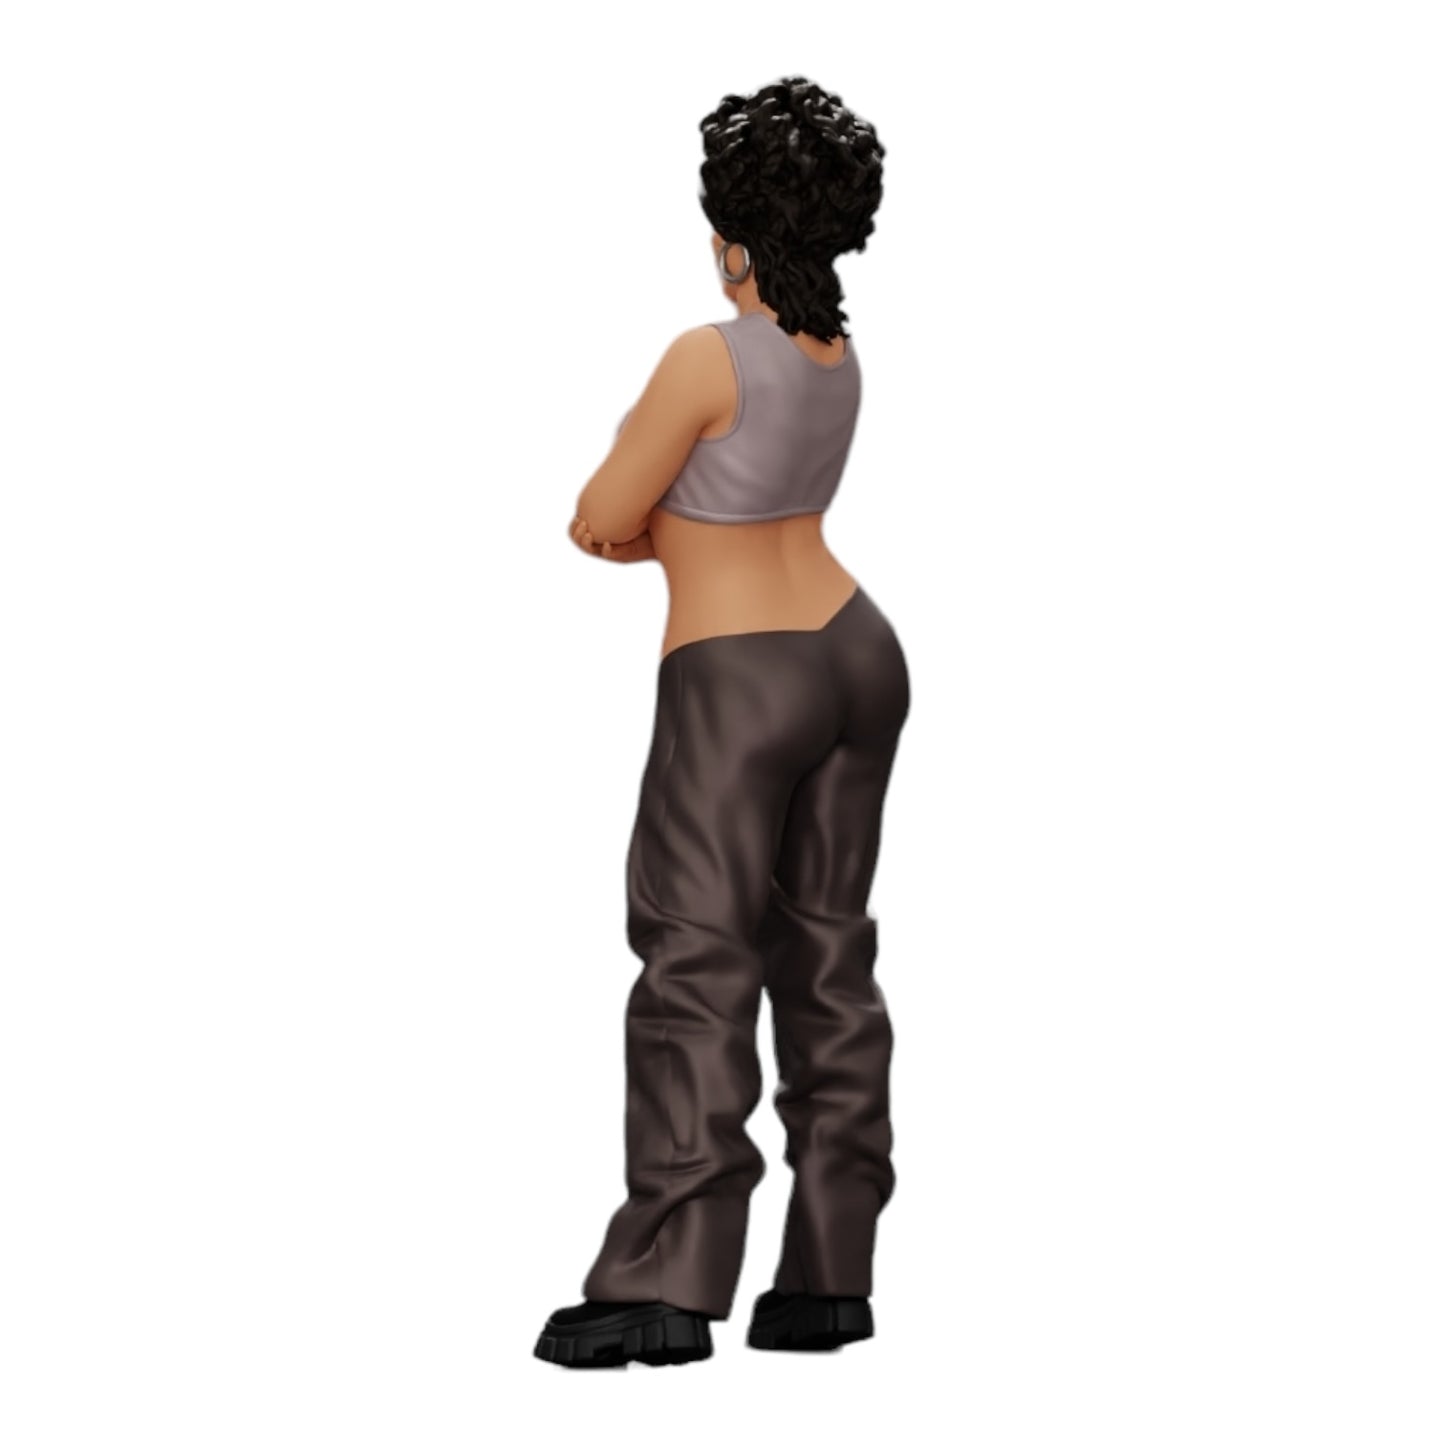 Diorama Modellbau Produktfoto 0: Mädchen mit lockigem Haar in weiten Hosen mit verschränkten Händen (Ref Nr. A39)